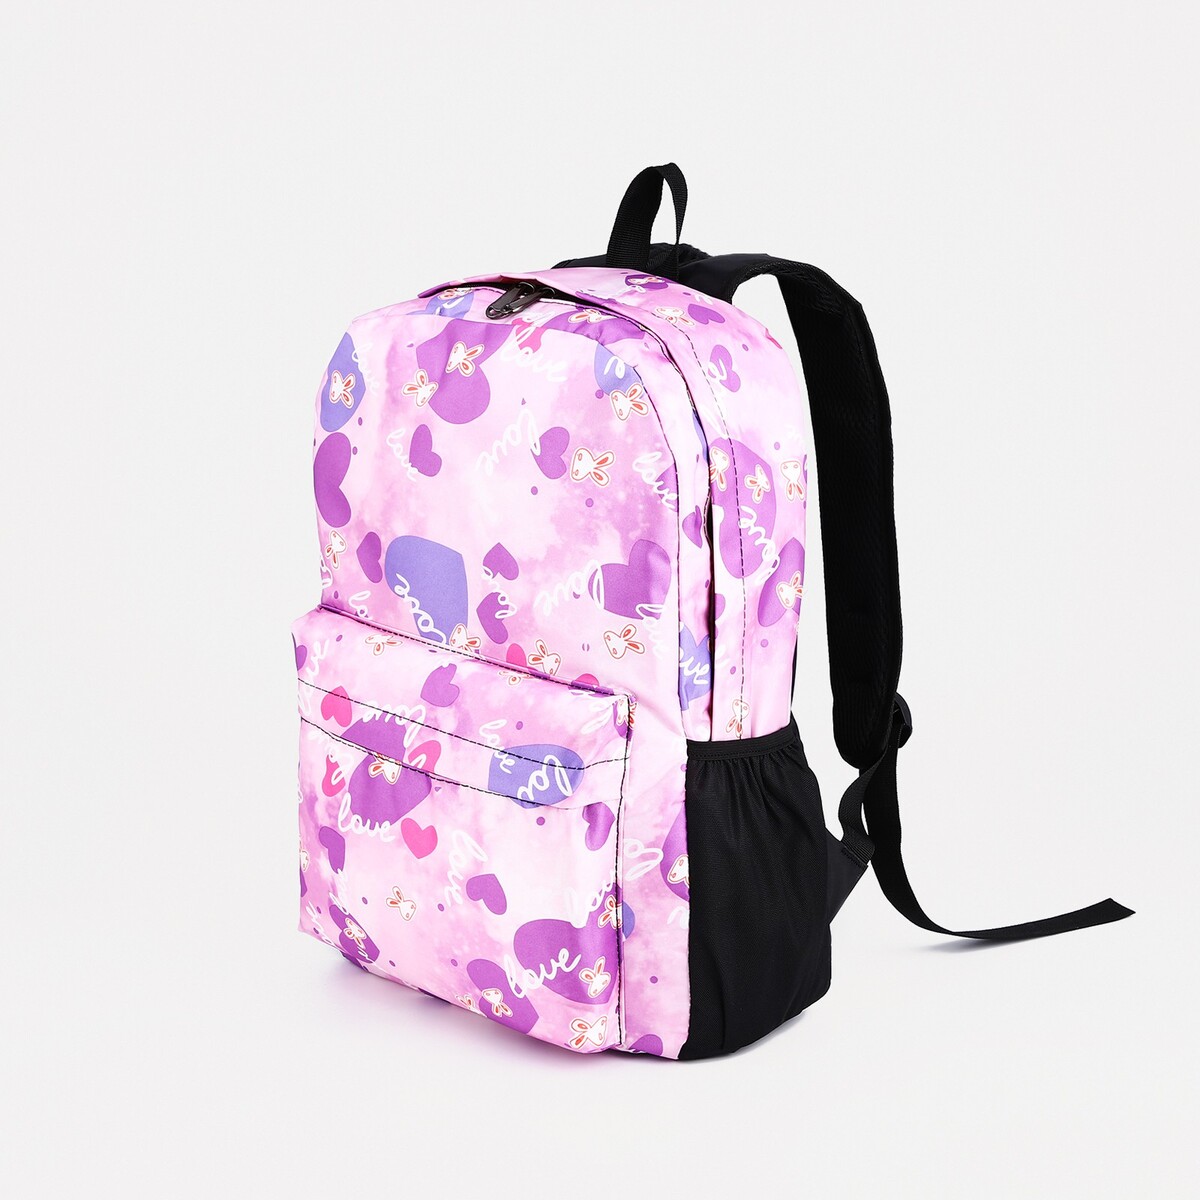 Рюкзак на молнии, 3 наружных кармана, цвет сиреневый рюкзак школьный из текстиля на молнии 4 кармана сиреневый